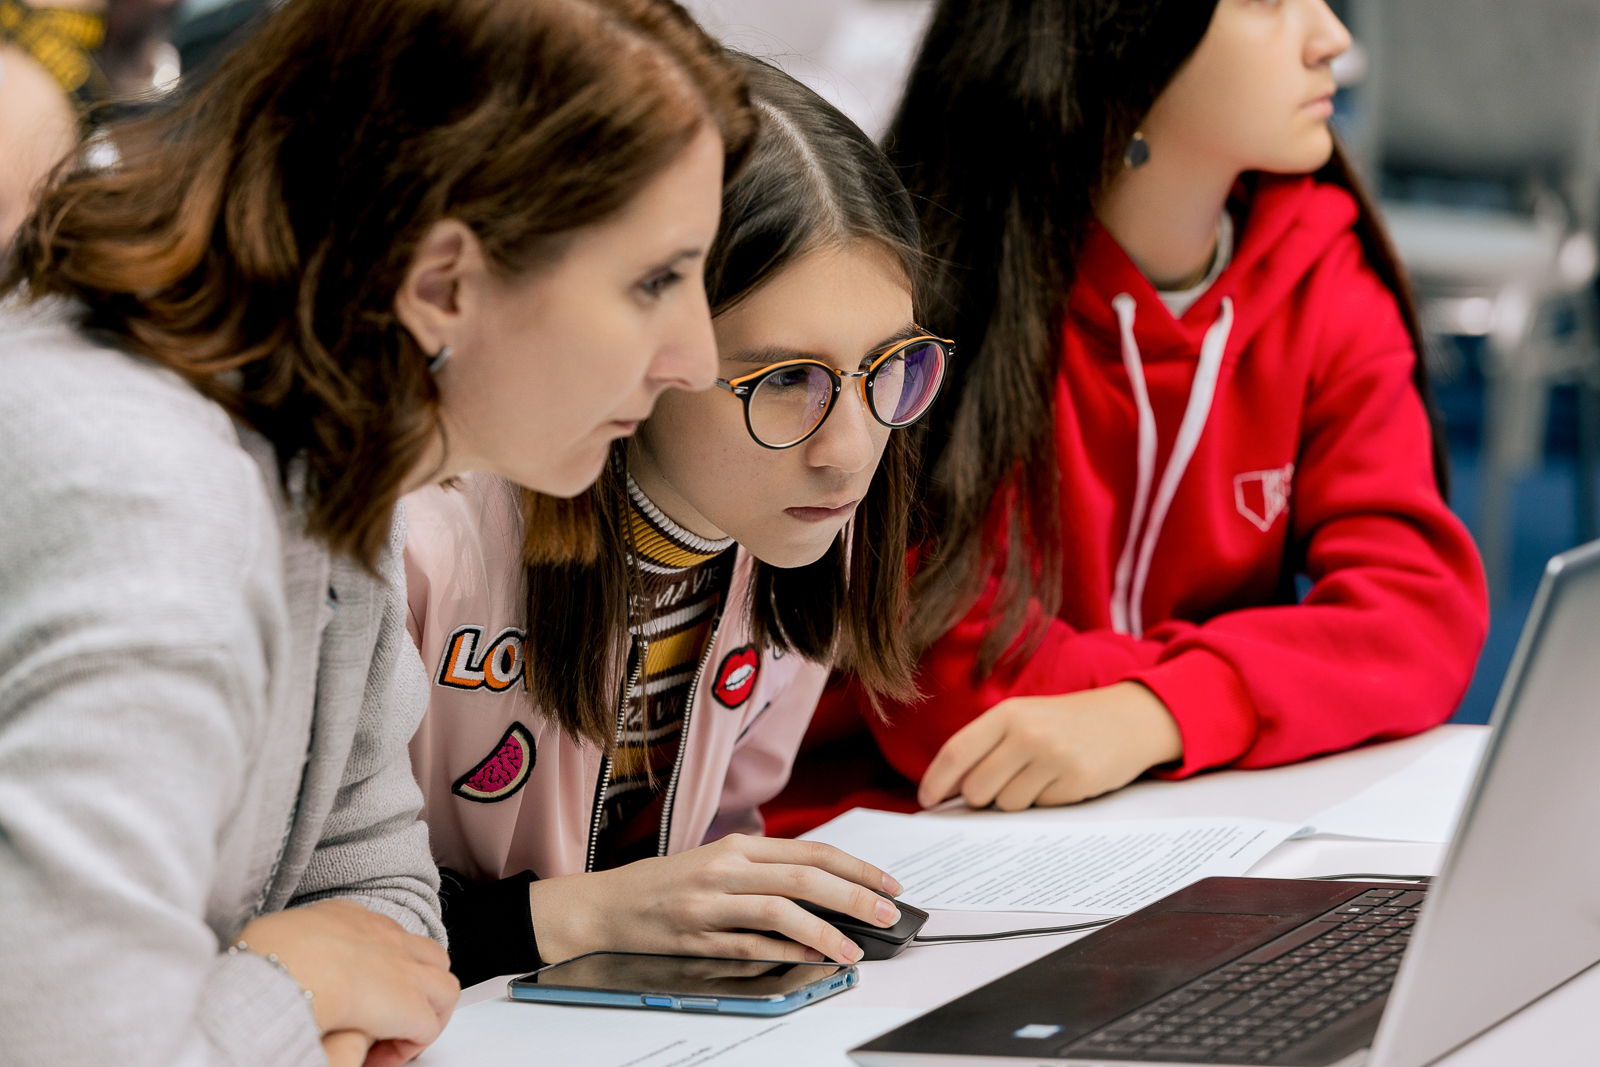 Московские школьники в числе лидеров по участию в «Уроке цифры» от Яндекса